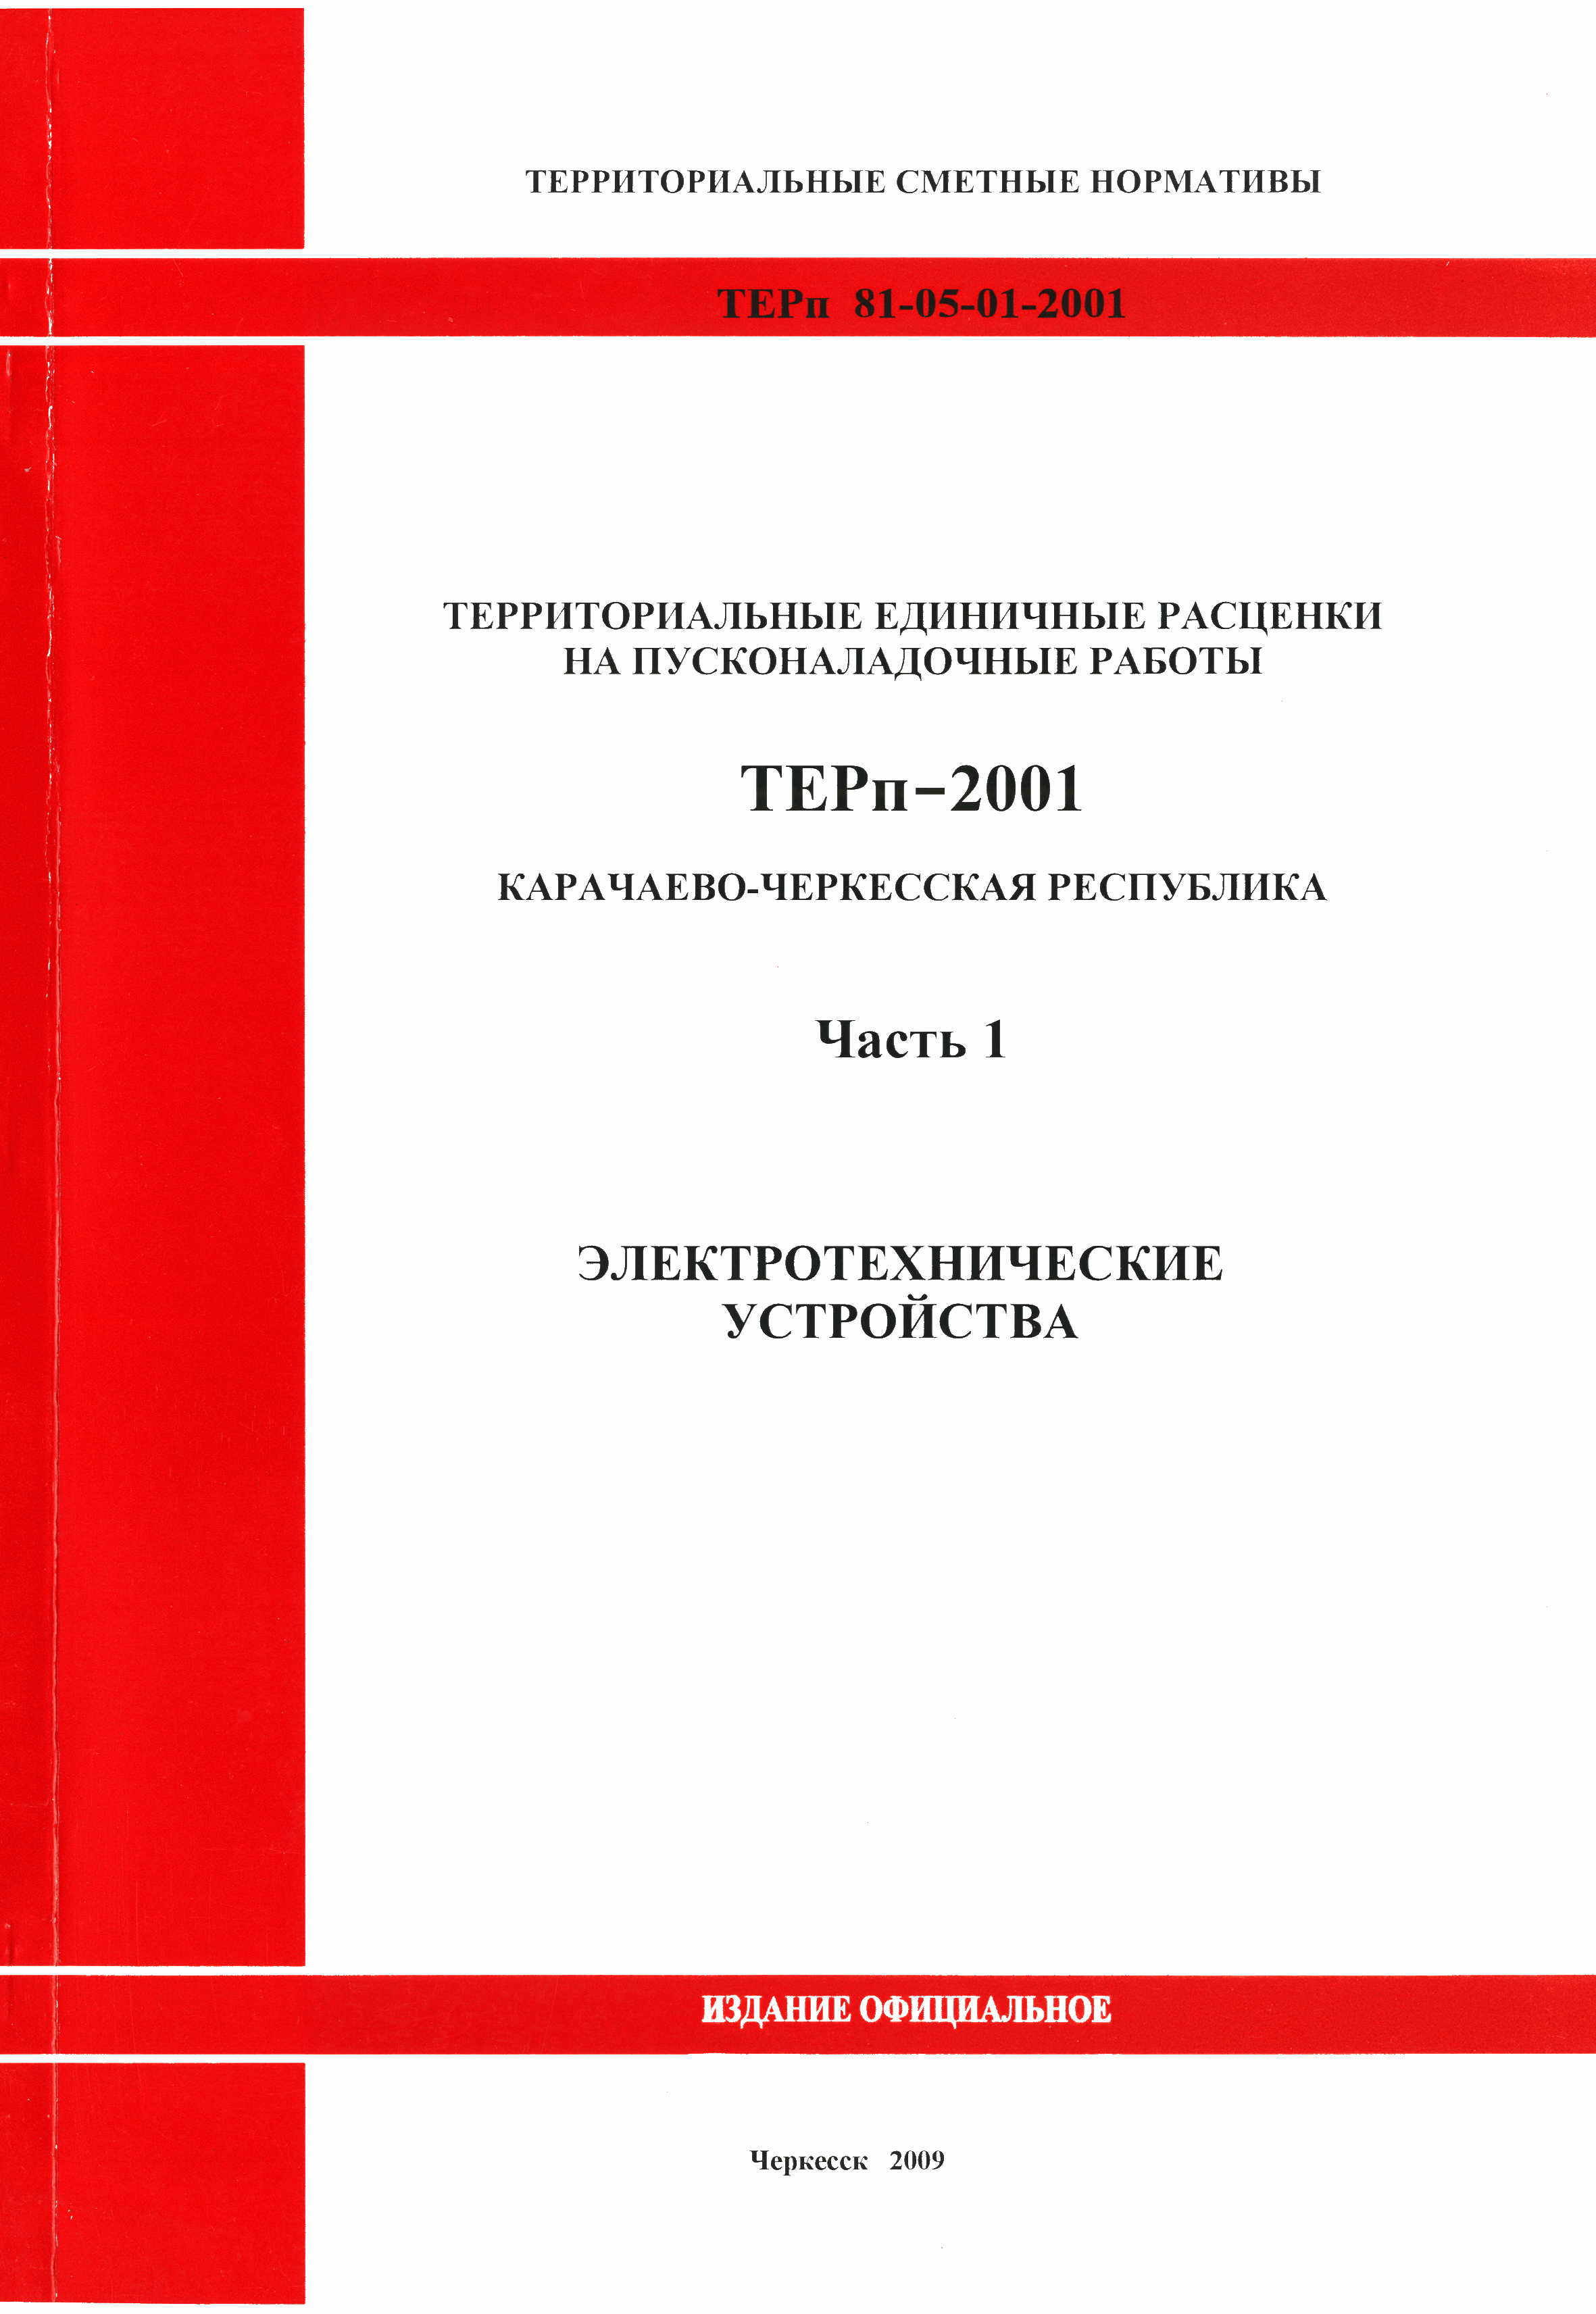 ТЕРп Карачаево-Черкесская Республика 01-2001